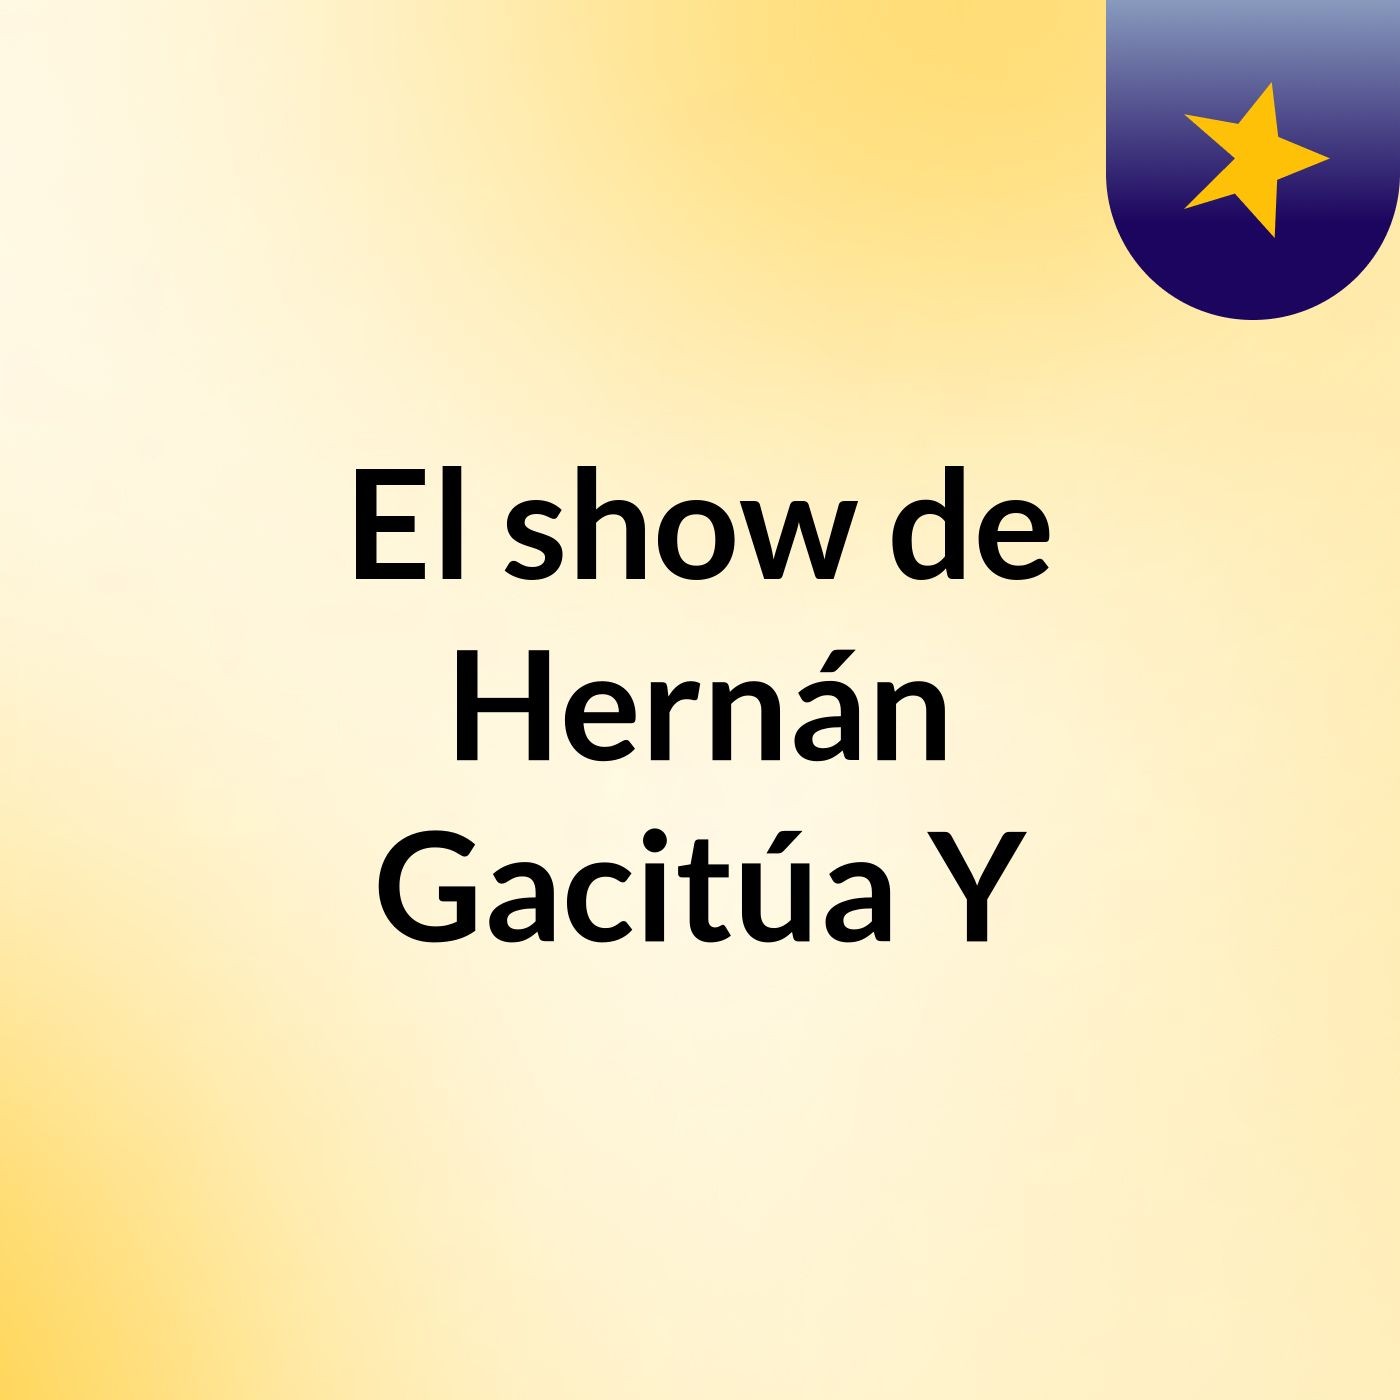 El show de Hernán Gacitúa Y